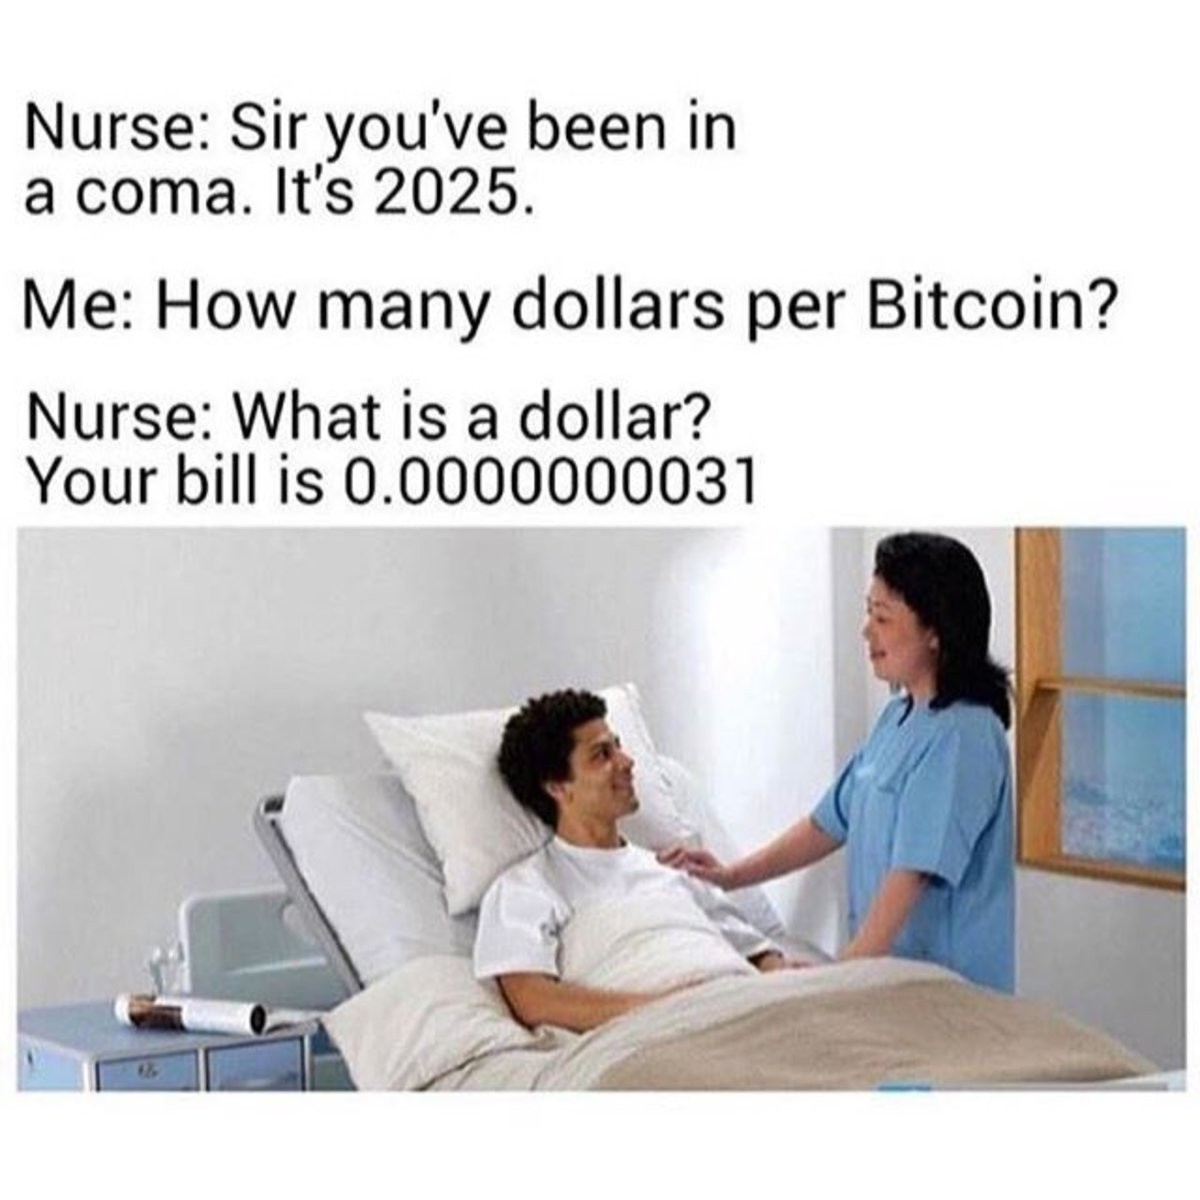 Bitcoin - meme